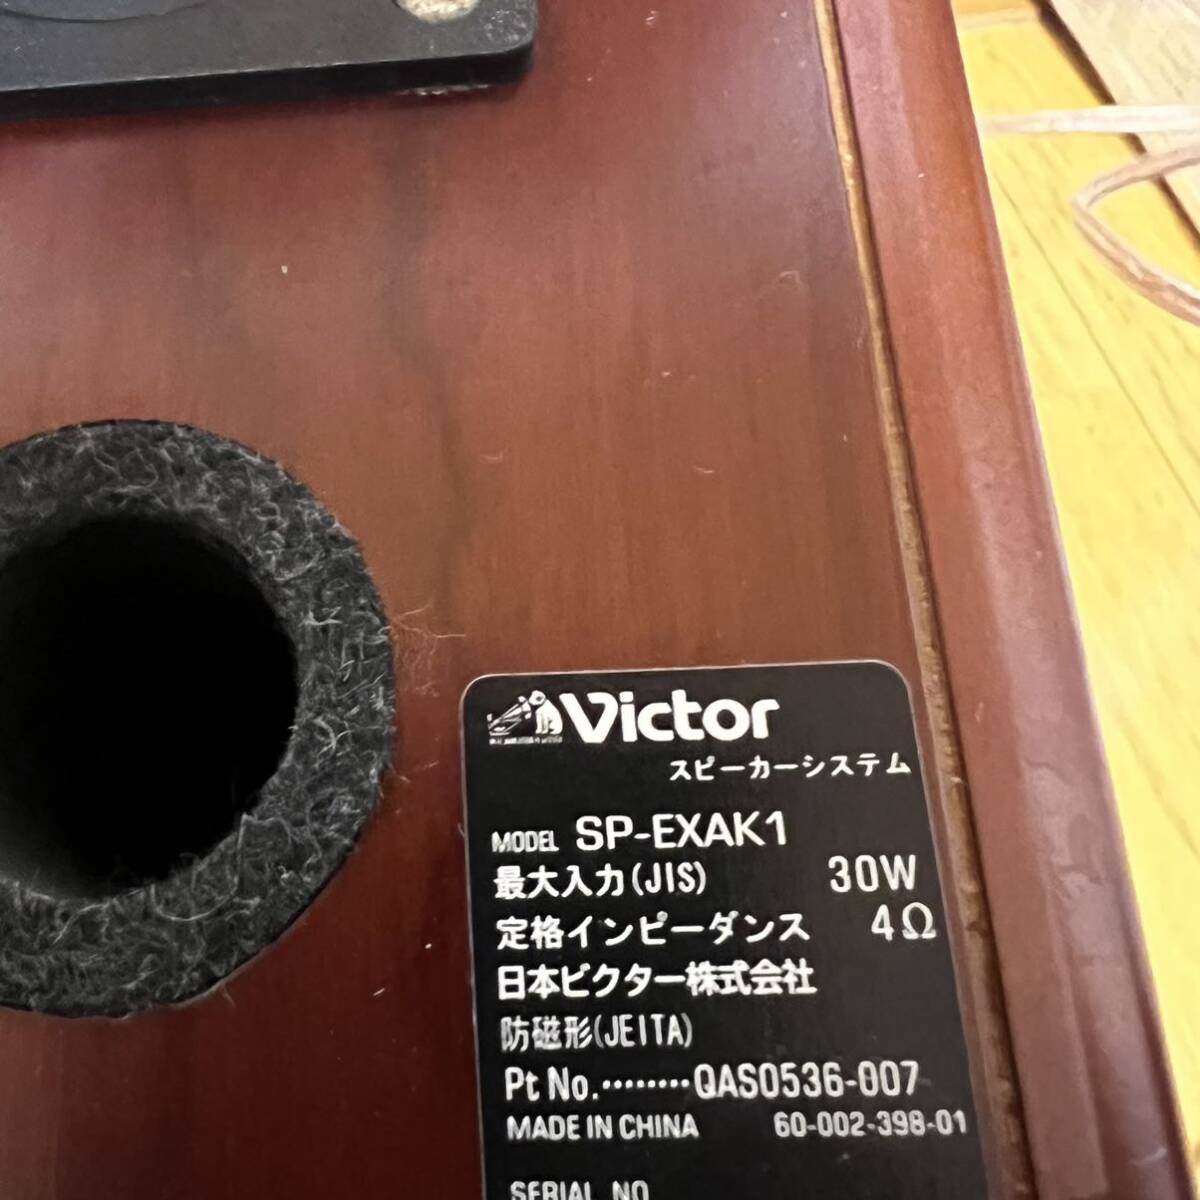  Victor DVD ресивер EX-AK1 проигрыватель JVC Victor Victor аудио музыкальный центр дерево кукуруза проигрыватель CD воспроизведение выход звука. OK